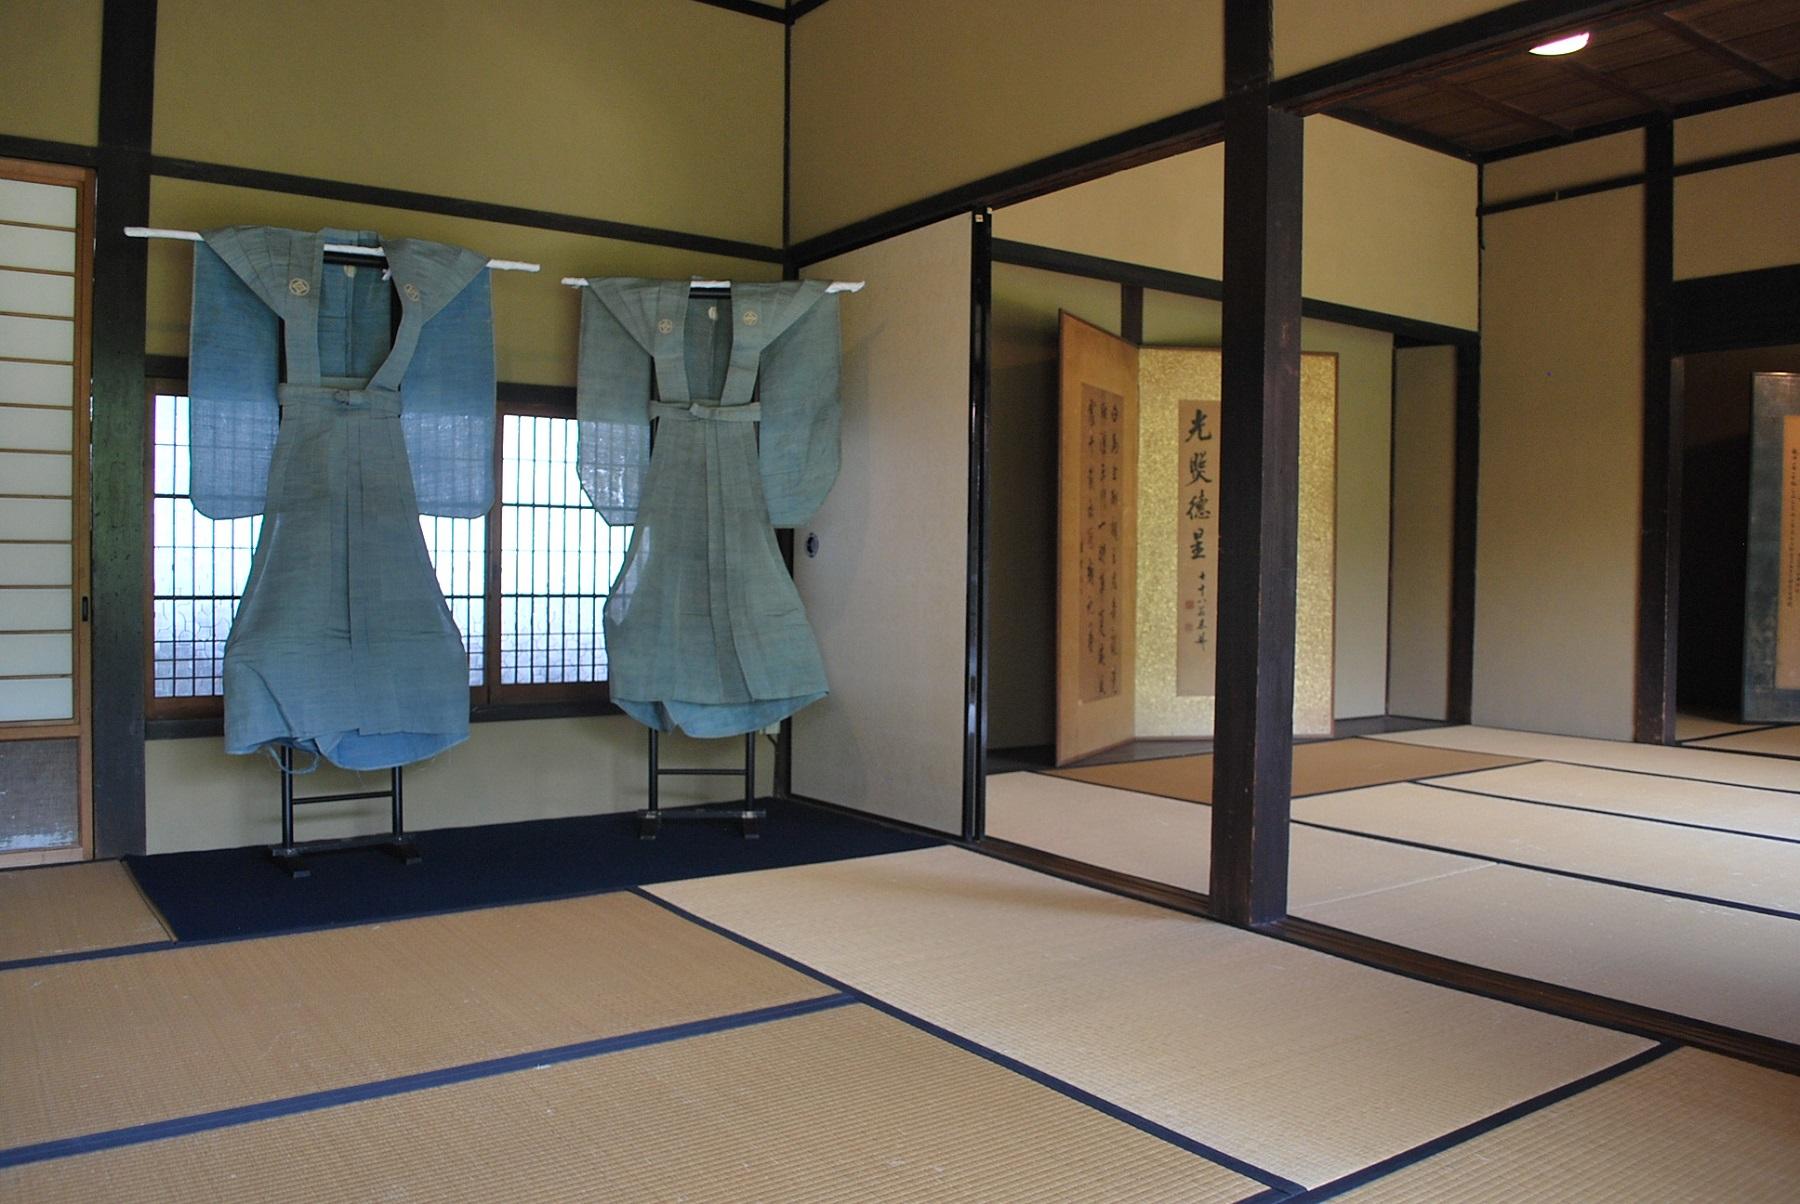 讃州井筒屋敷の畳続きの広い部屋に紋付き裃が2着かけられている様子の写真